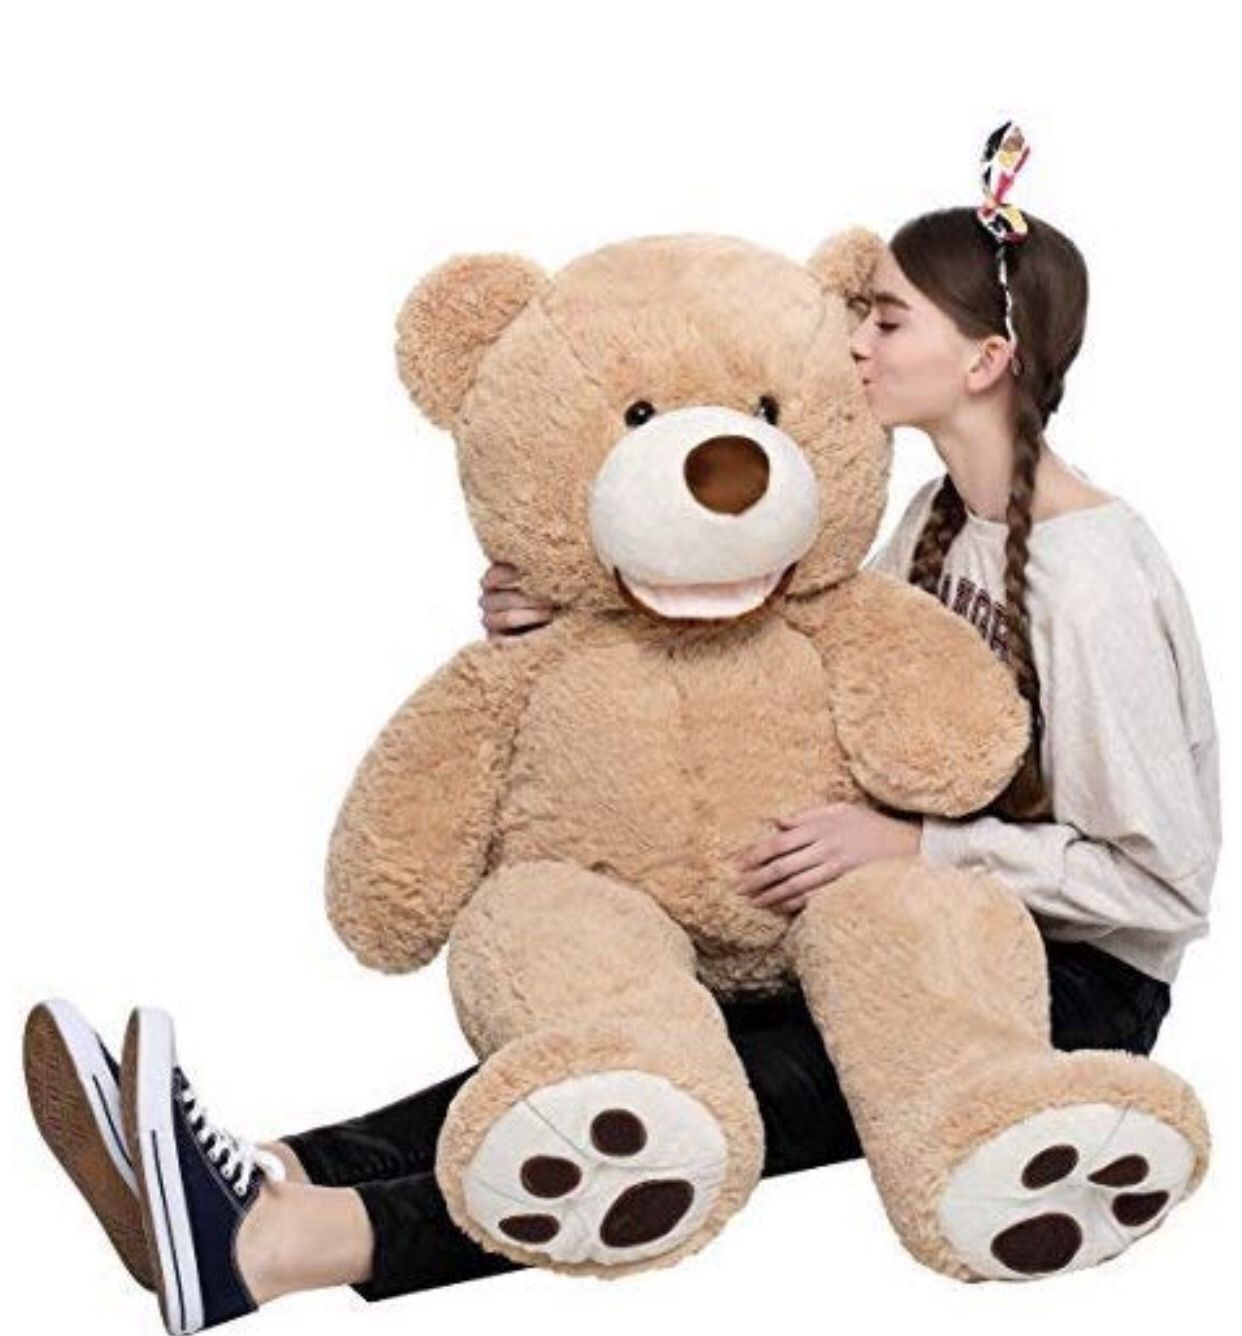 Teddy bear soft stuffed 51 inches